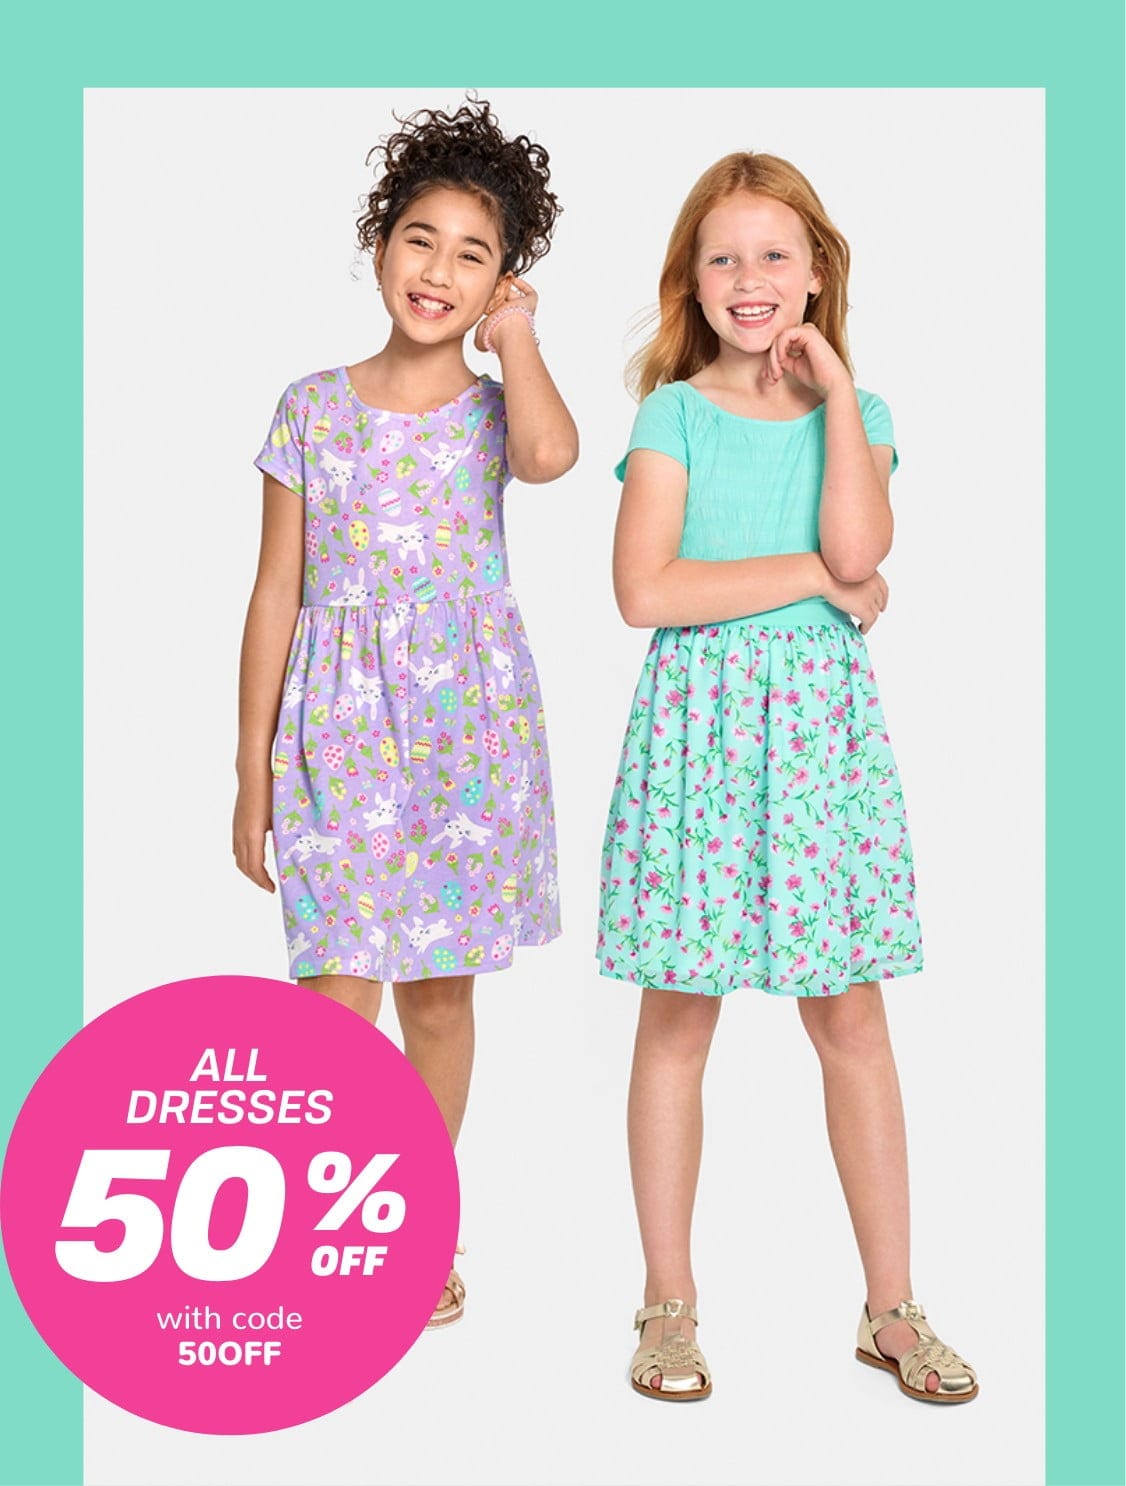 Buy Niños Adolescente niña (9-14 años) Clothes Online for Sale